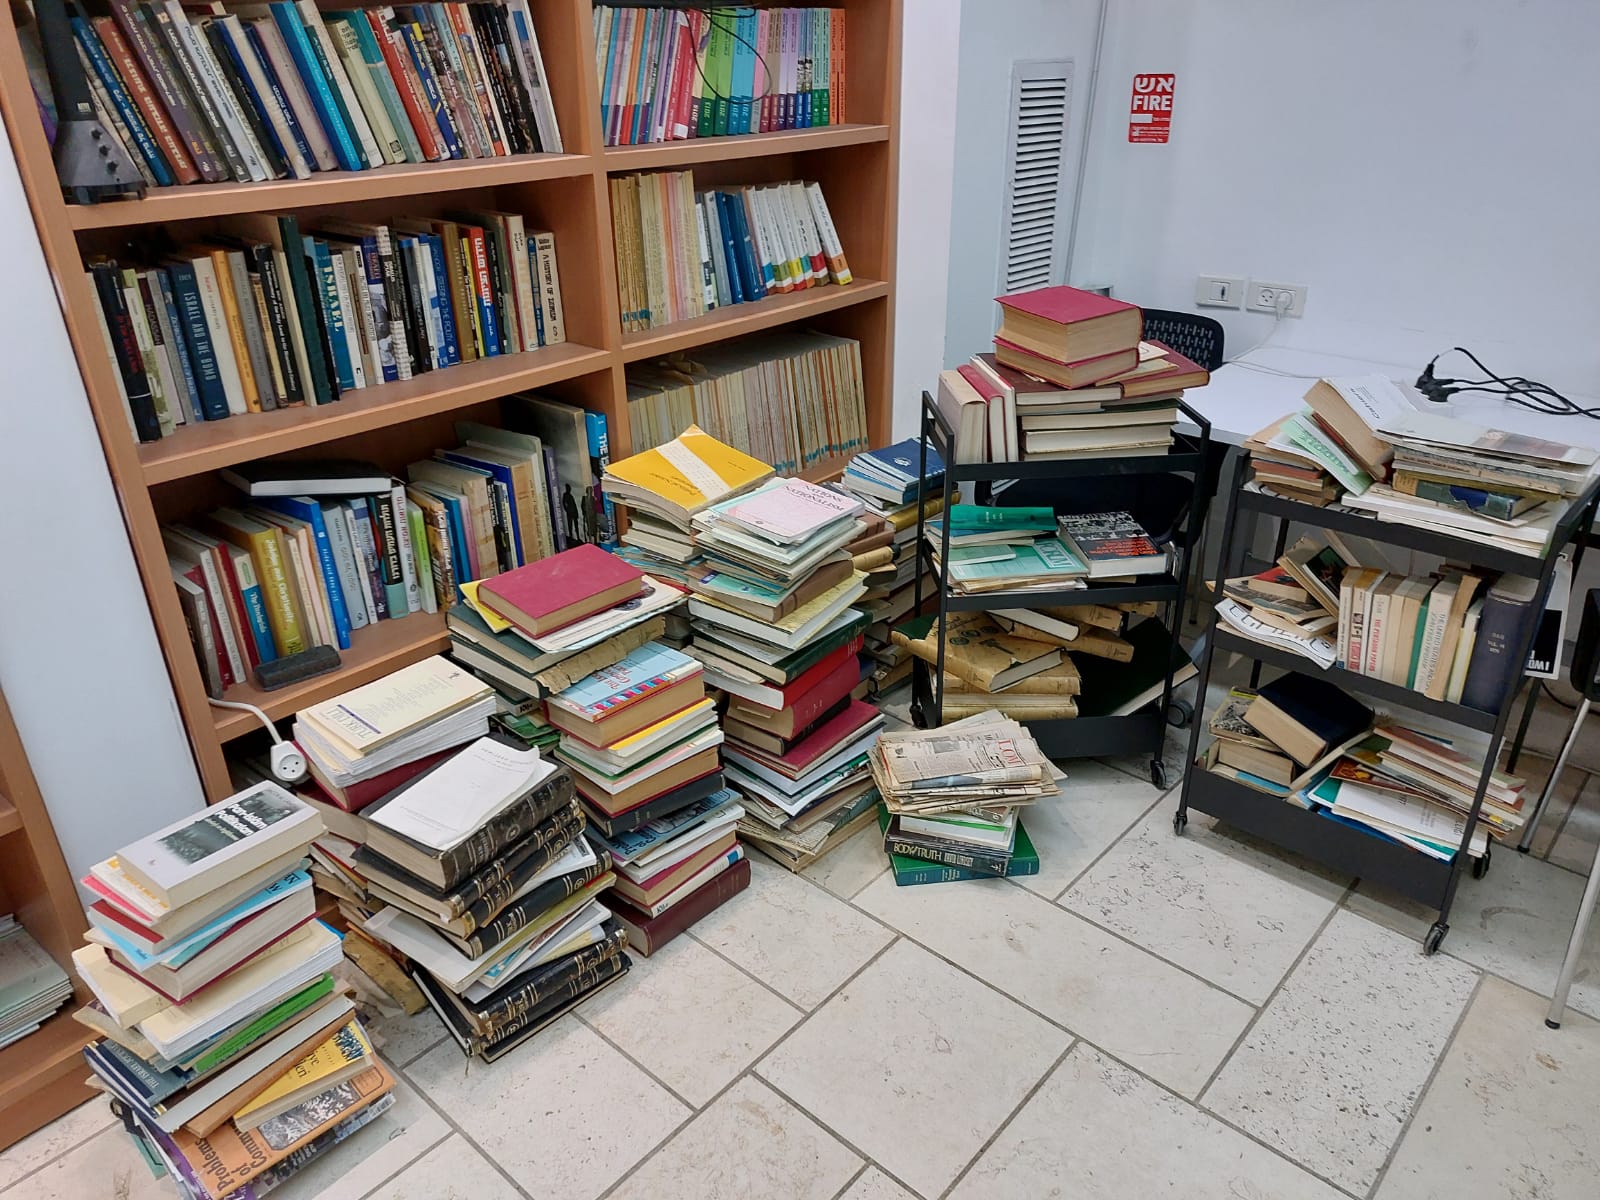 אחרי שנמצאו במכולה בקטמון – עובדי העירייה העבירו את ספריו של החוקר פרופ' יעקב לנדאו לידי החוקרים במכון ירושלים